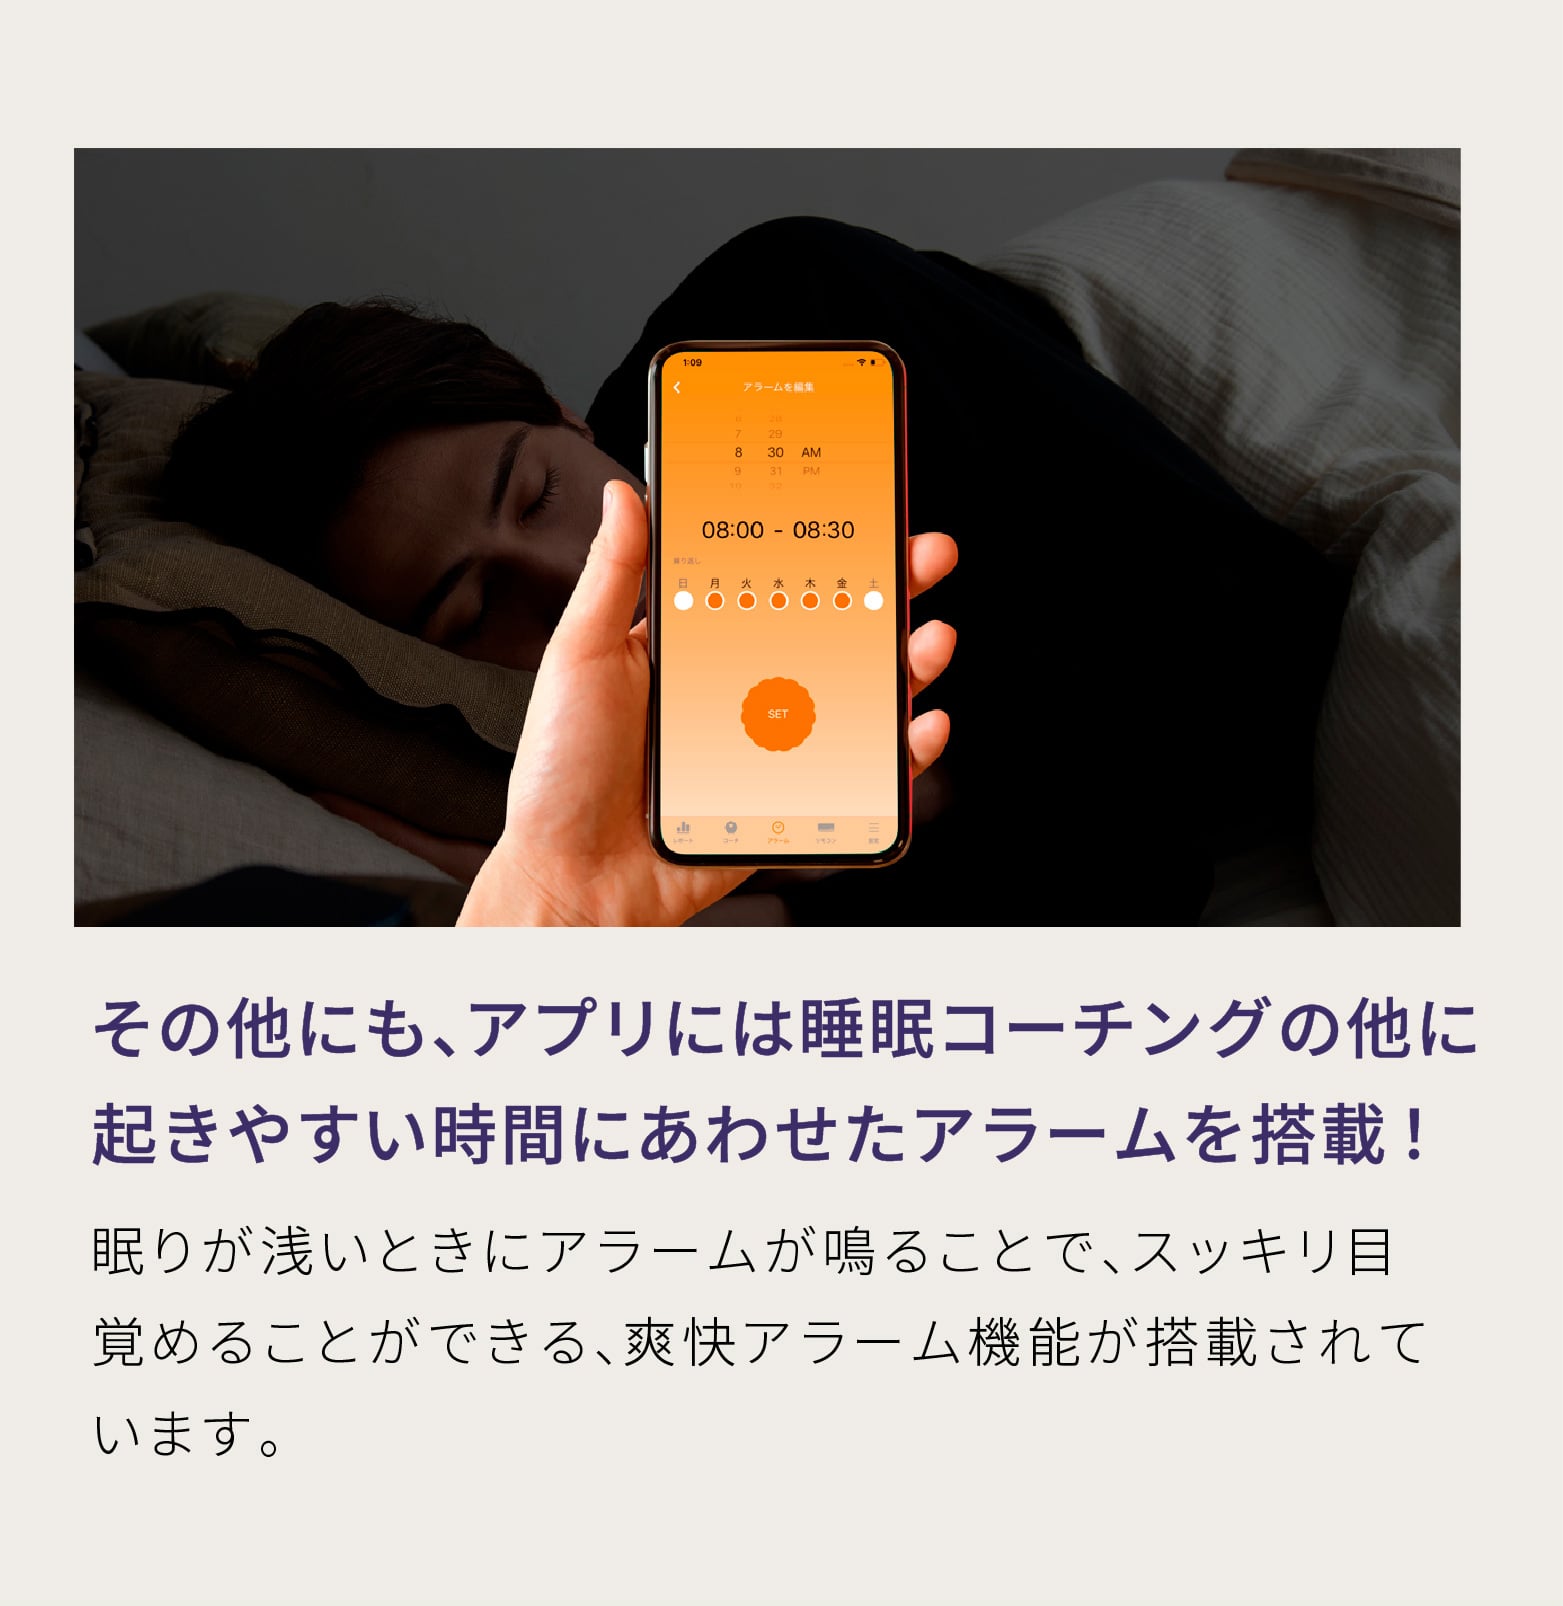 その他にも、アプリには睡眠コーチングの他に起きやすい時間にあわせたアラームを搭載！ 眠りが浅いときにアラームが鳴ることで、スッキリ目覚めることができる、爽快アラーム機能が搭載されています。